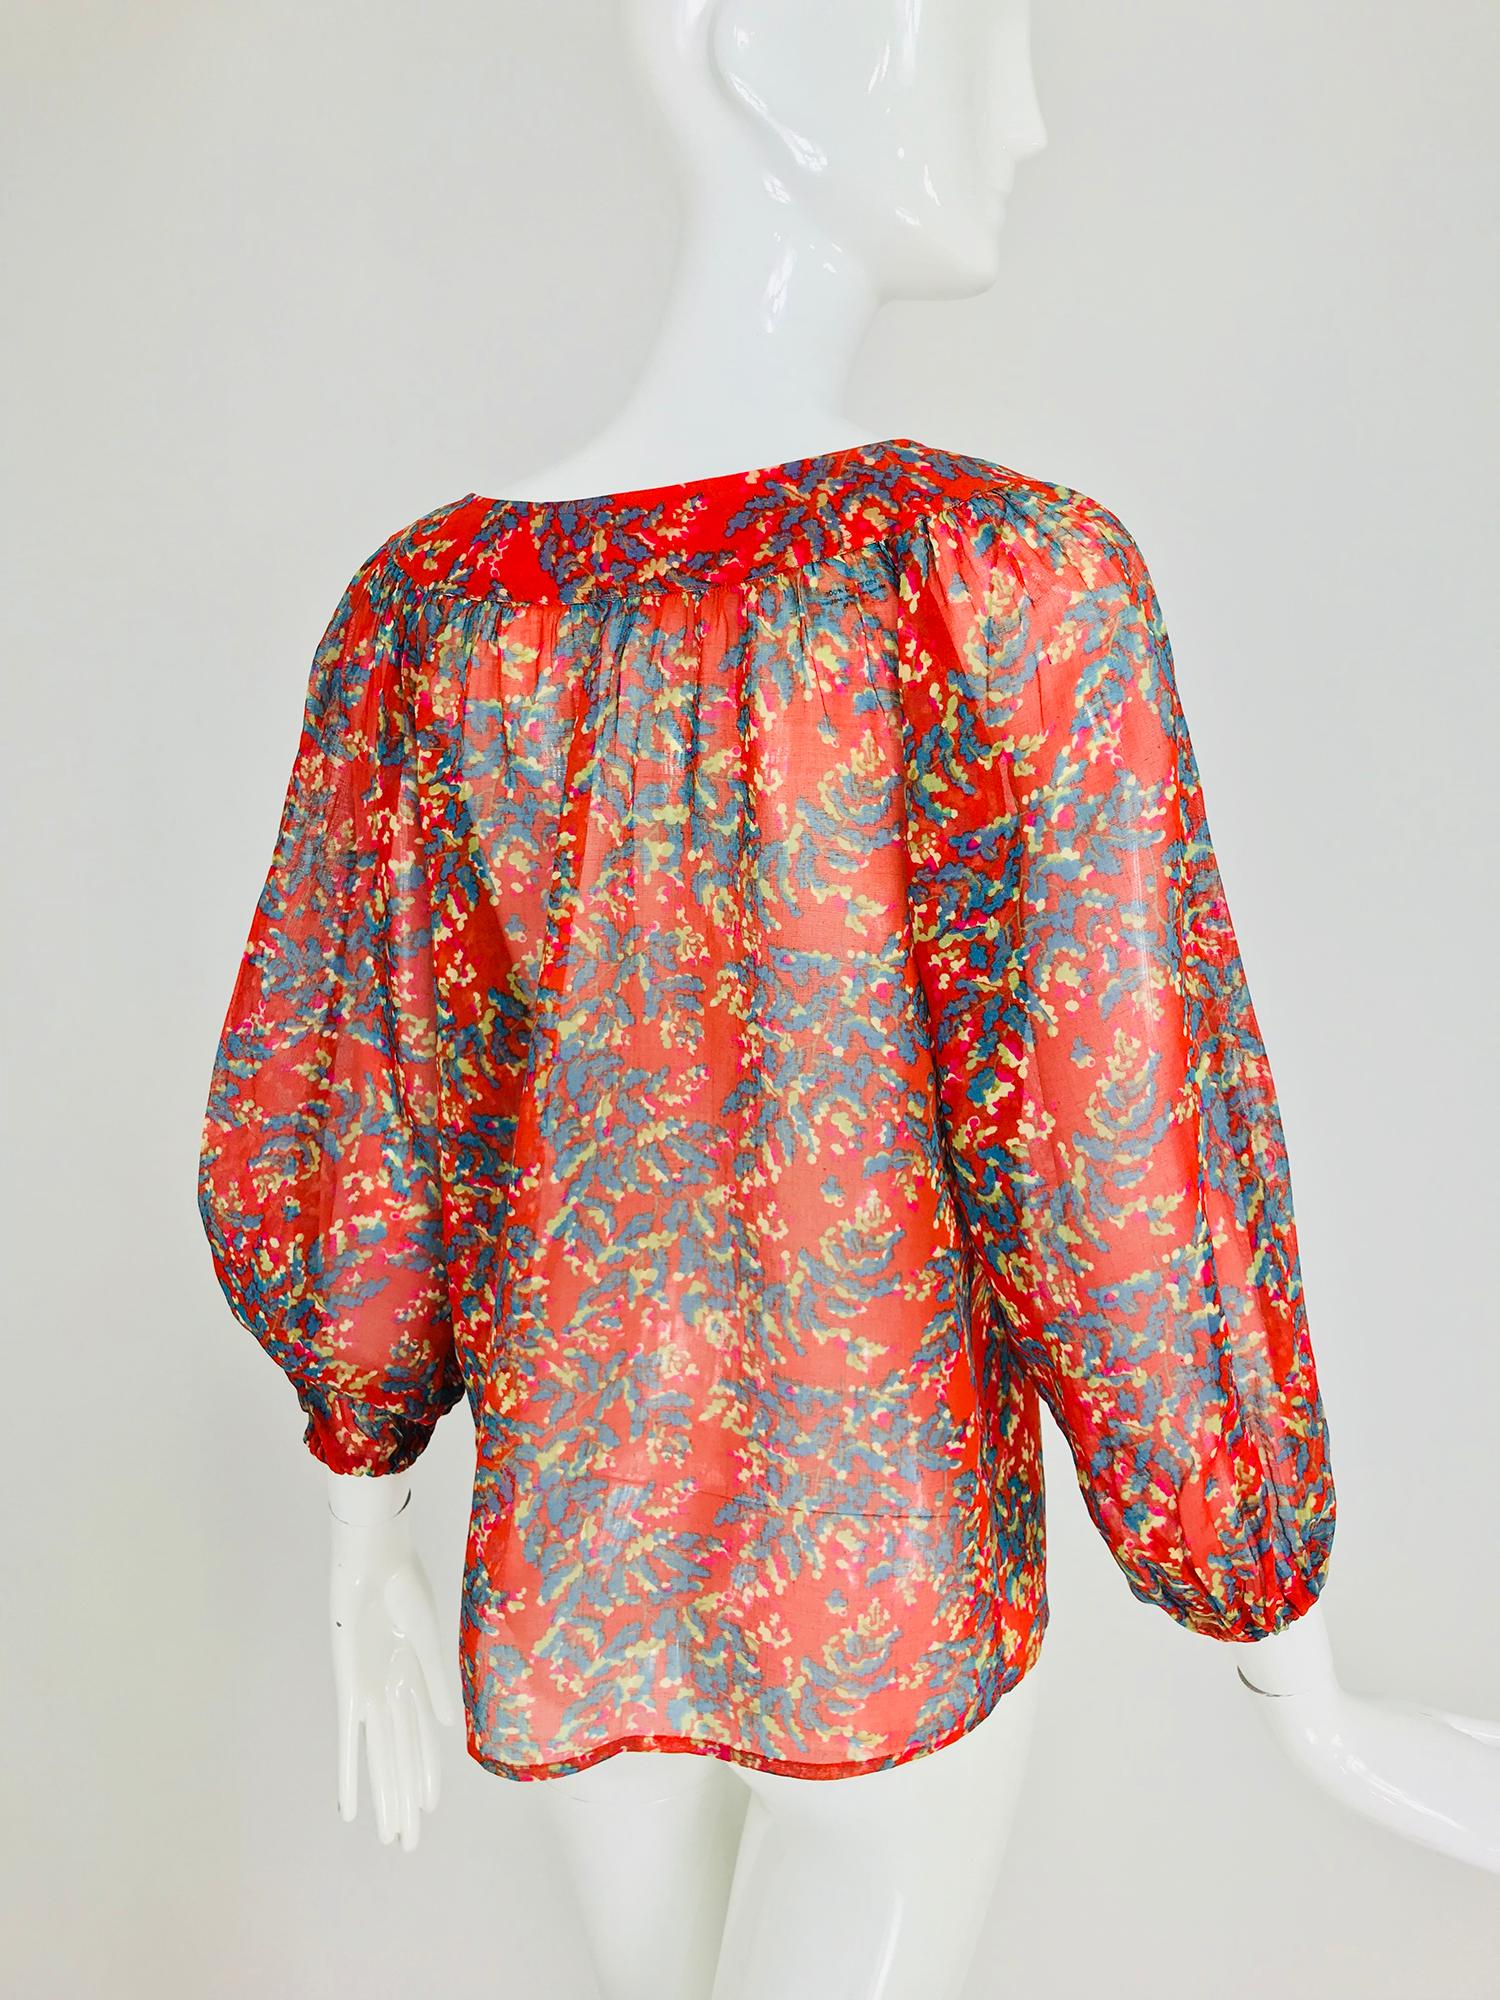 Yves Saint Laurent sheer floral cotton peasant blouse 1970s 4